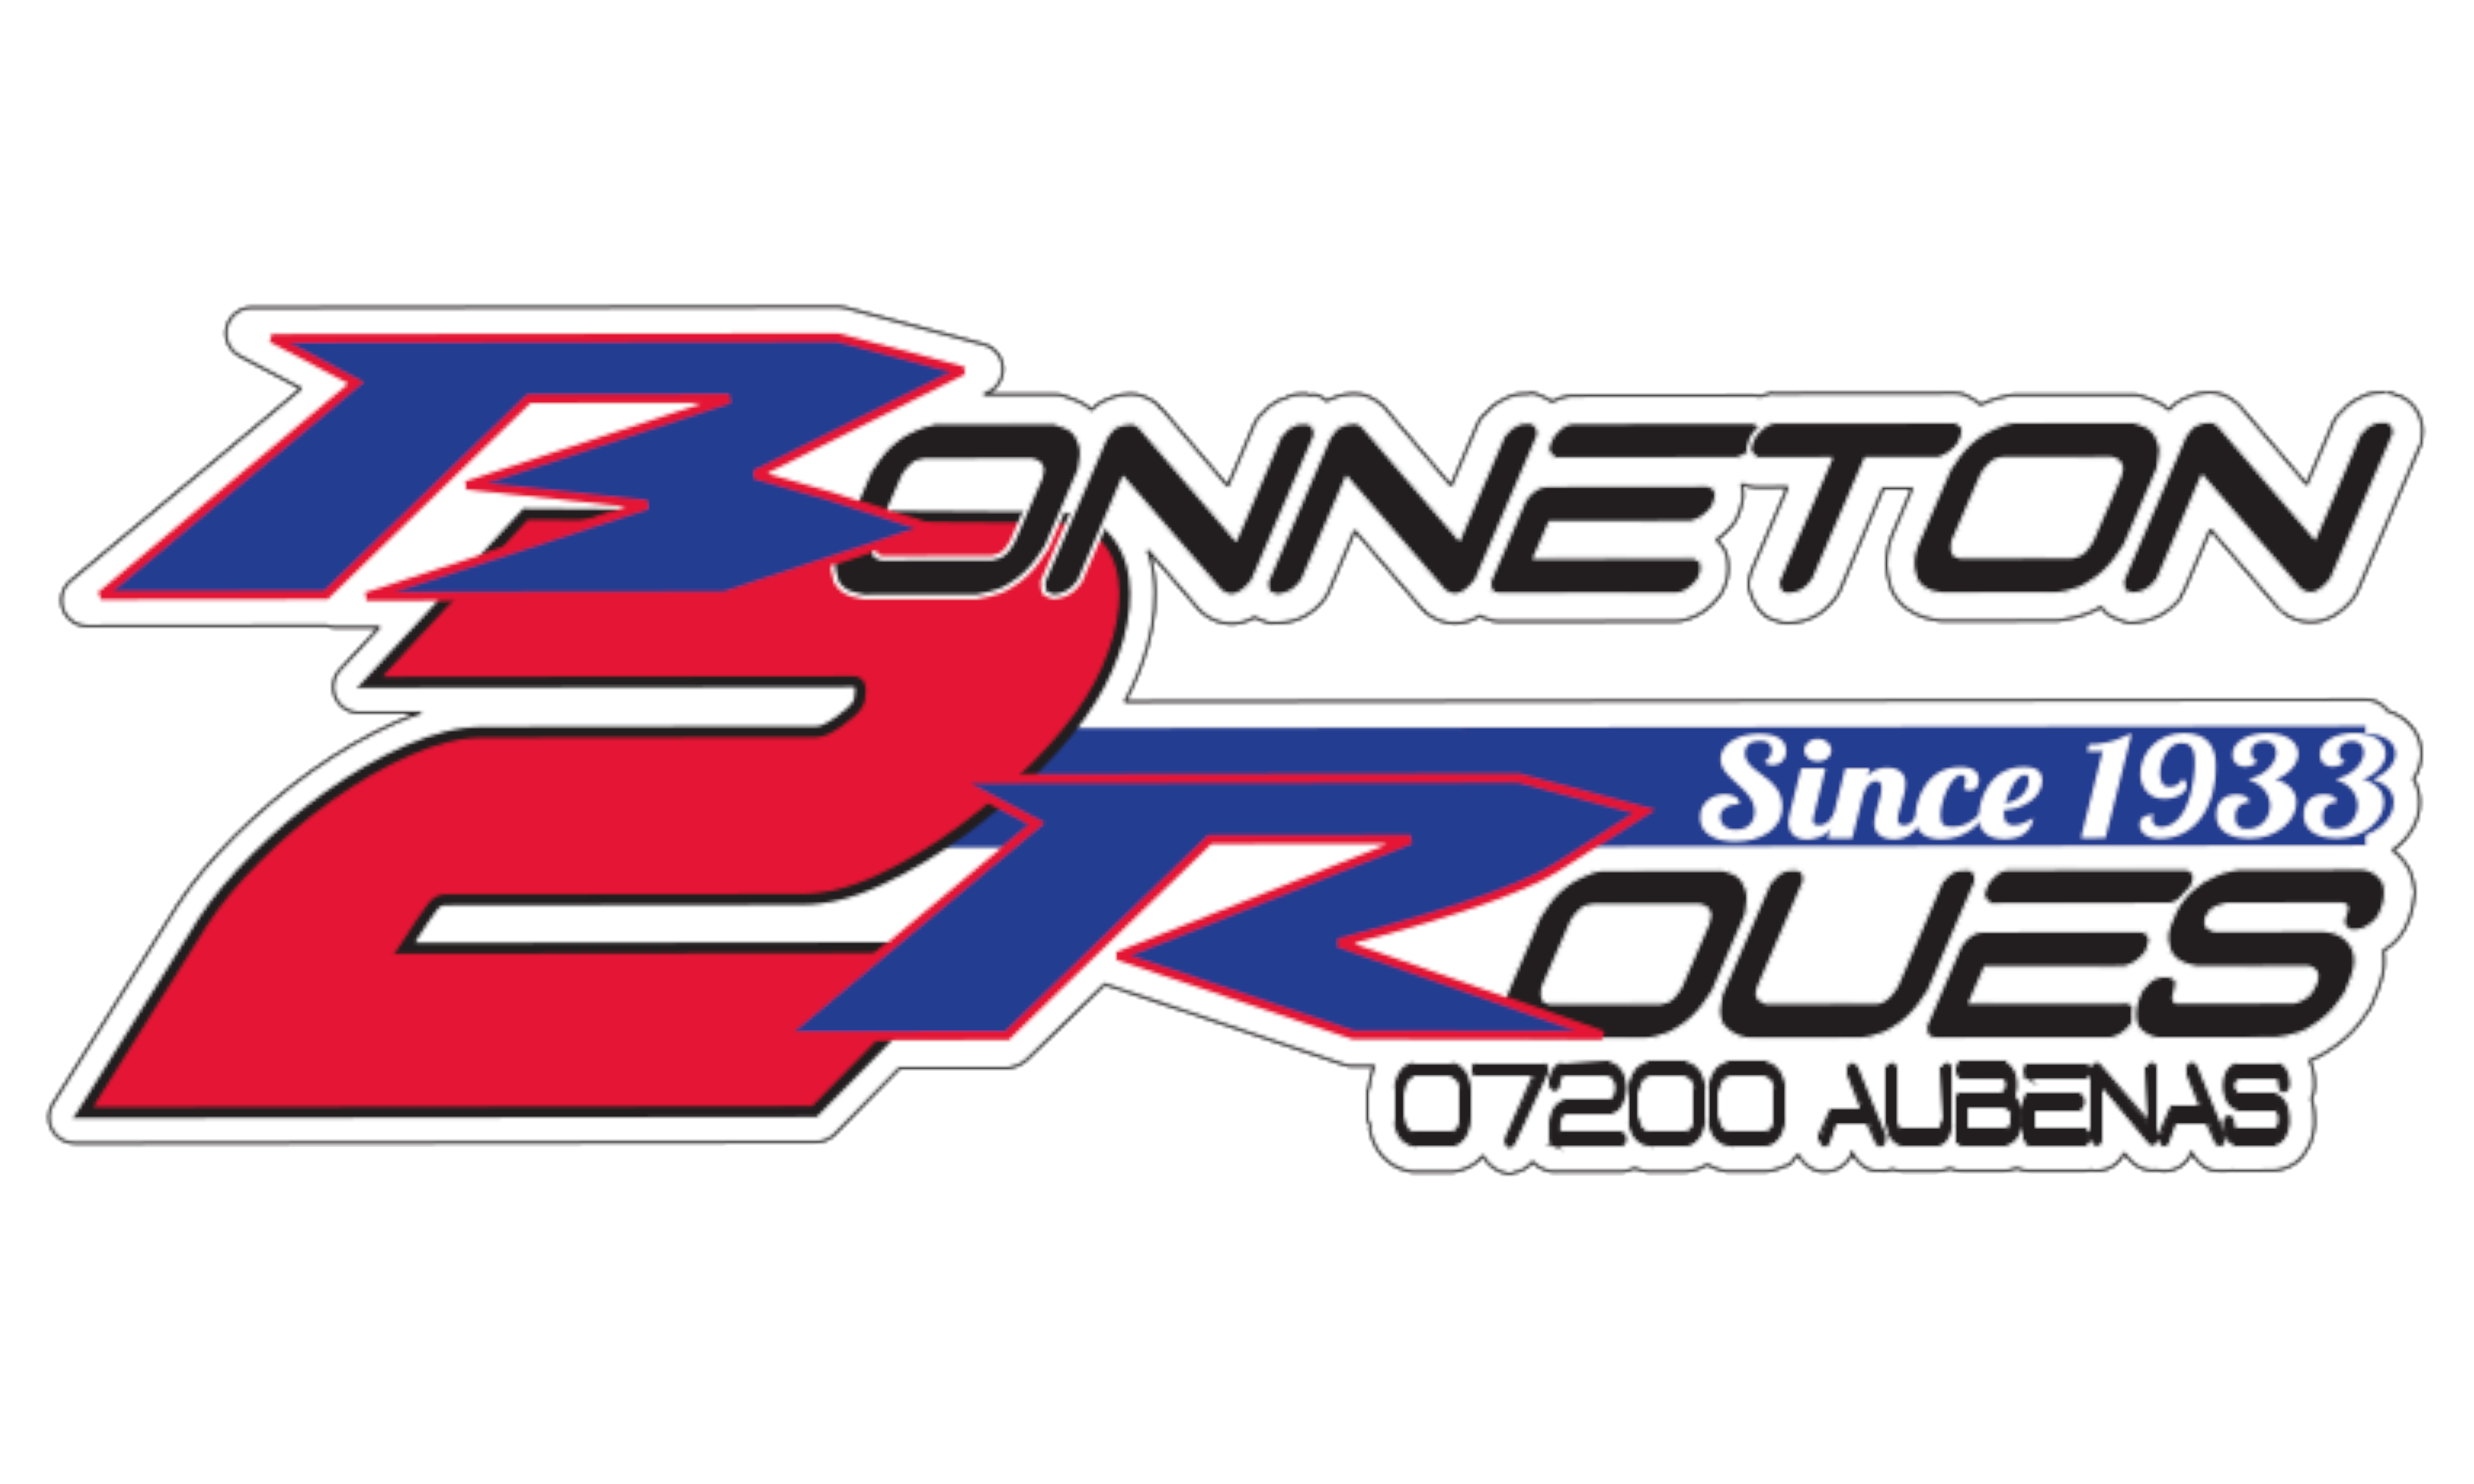 Bonneton_logo24